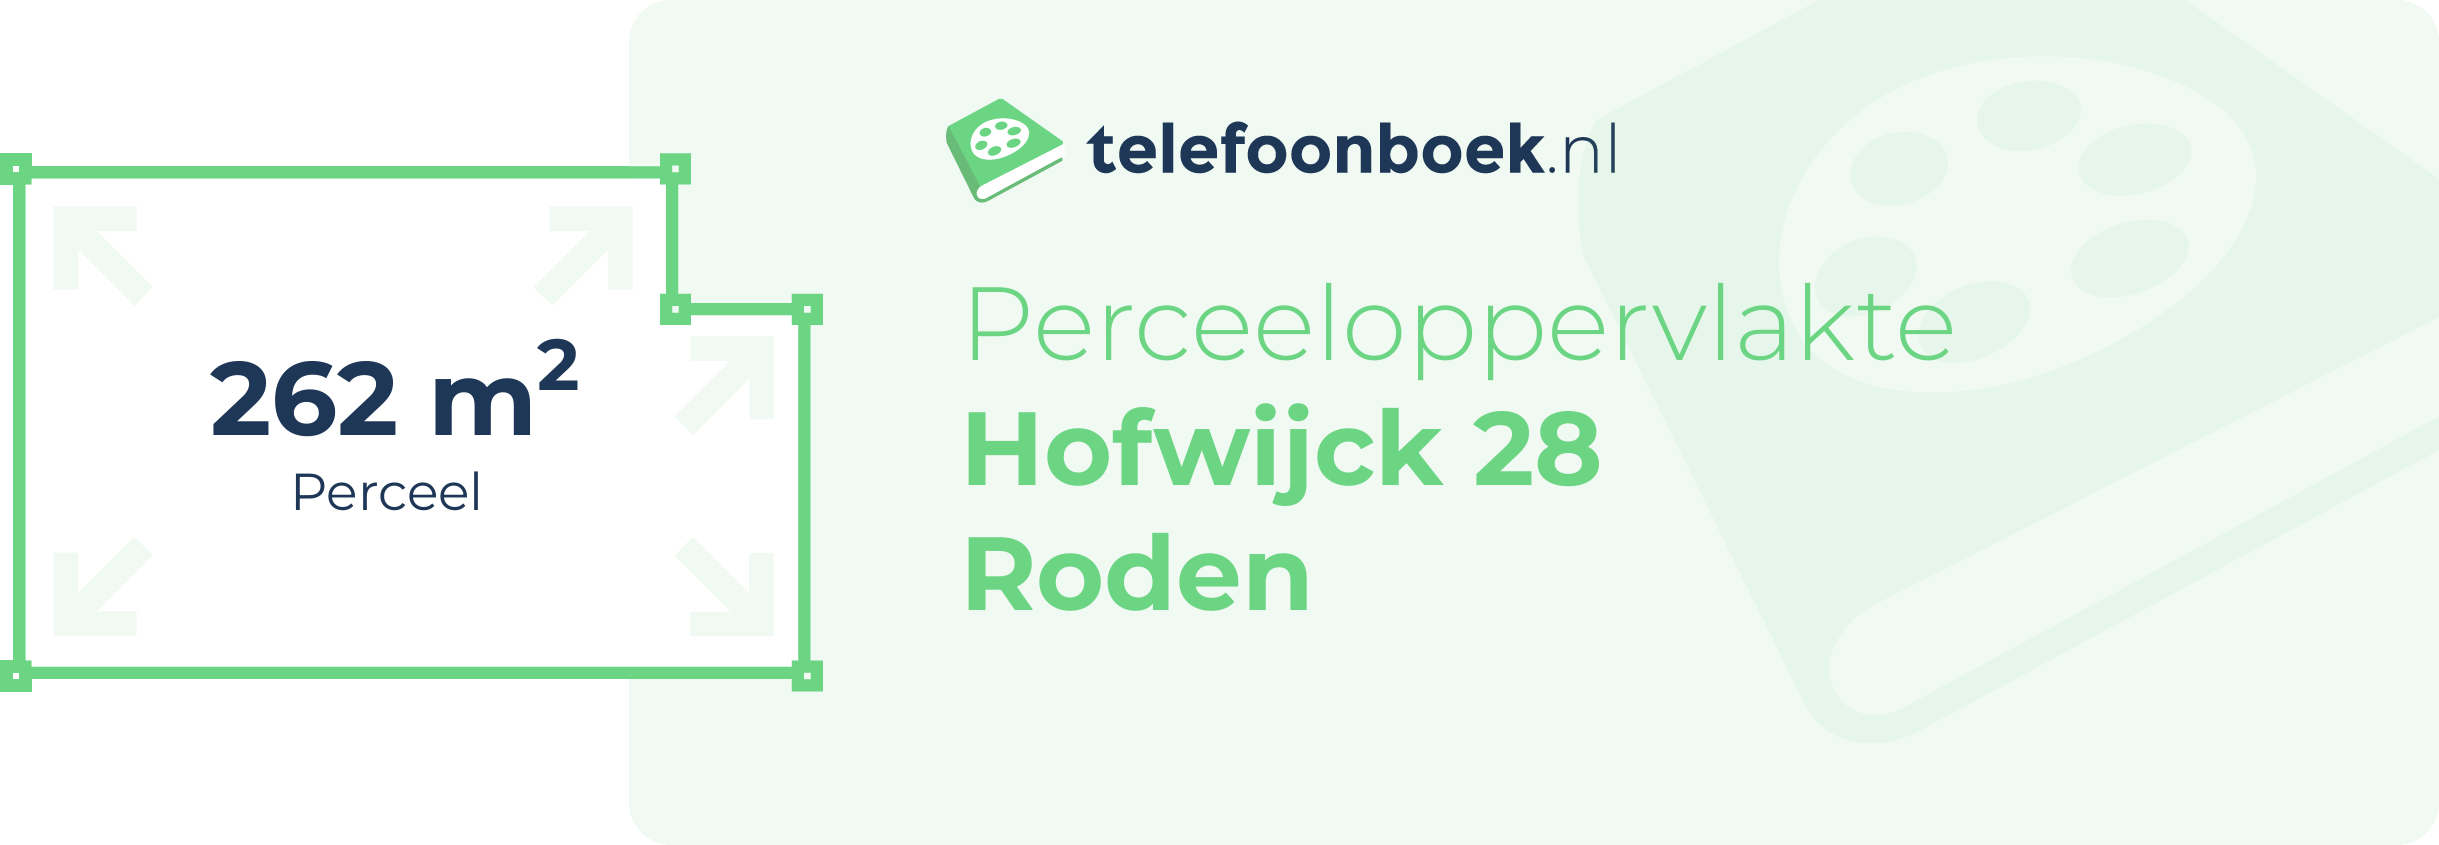 Perceeloppervlakte Hofwijck 28 Roden